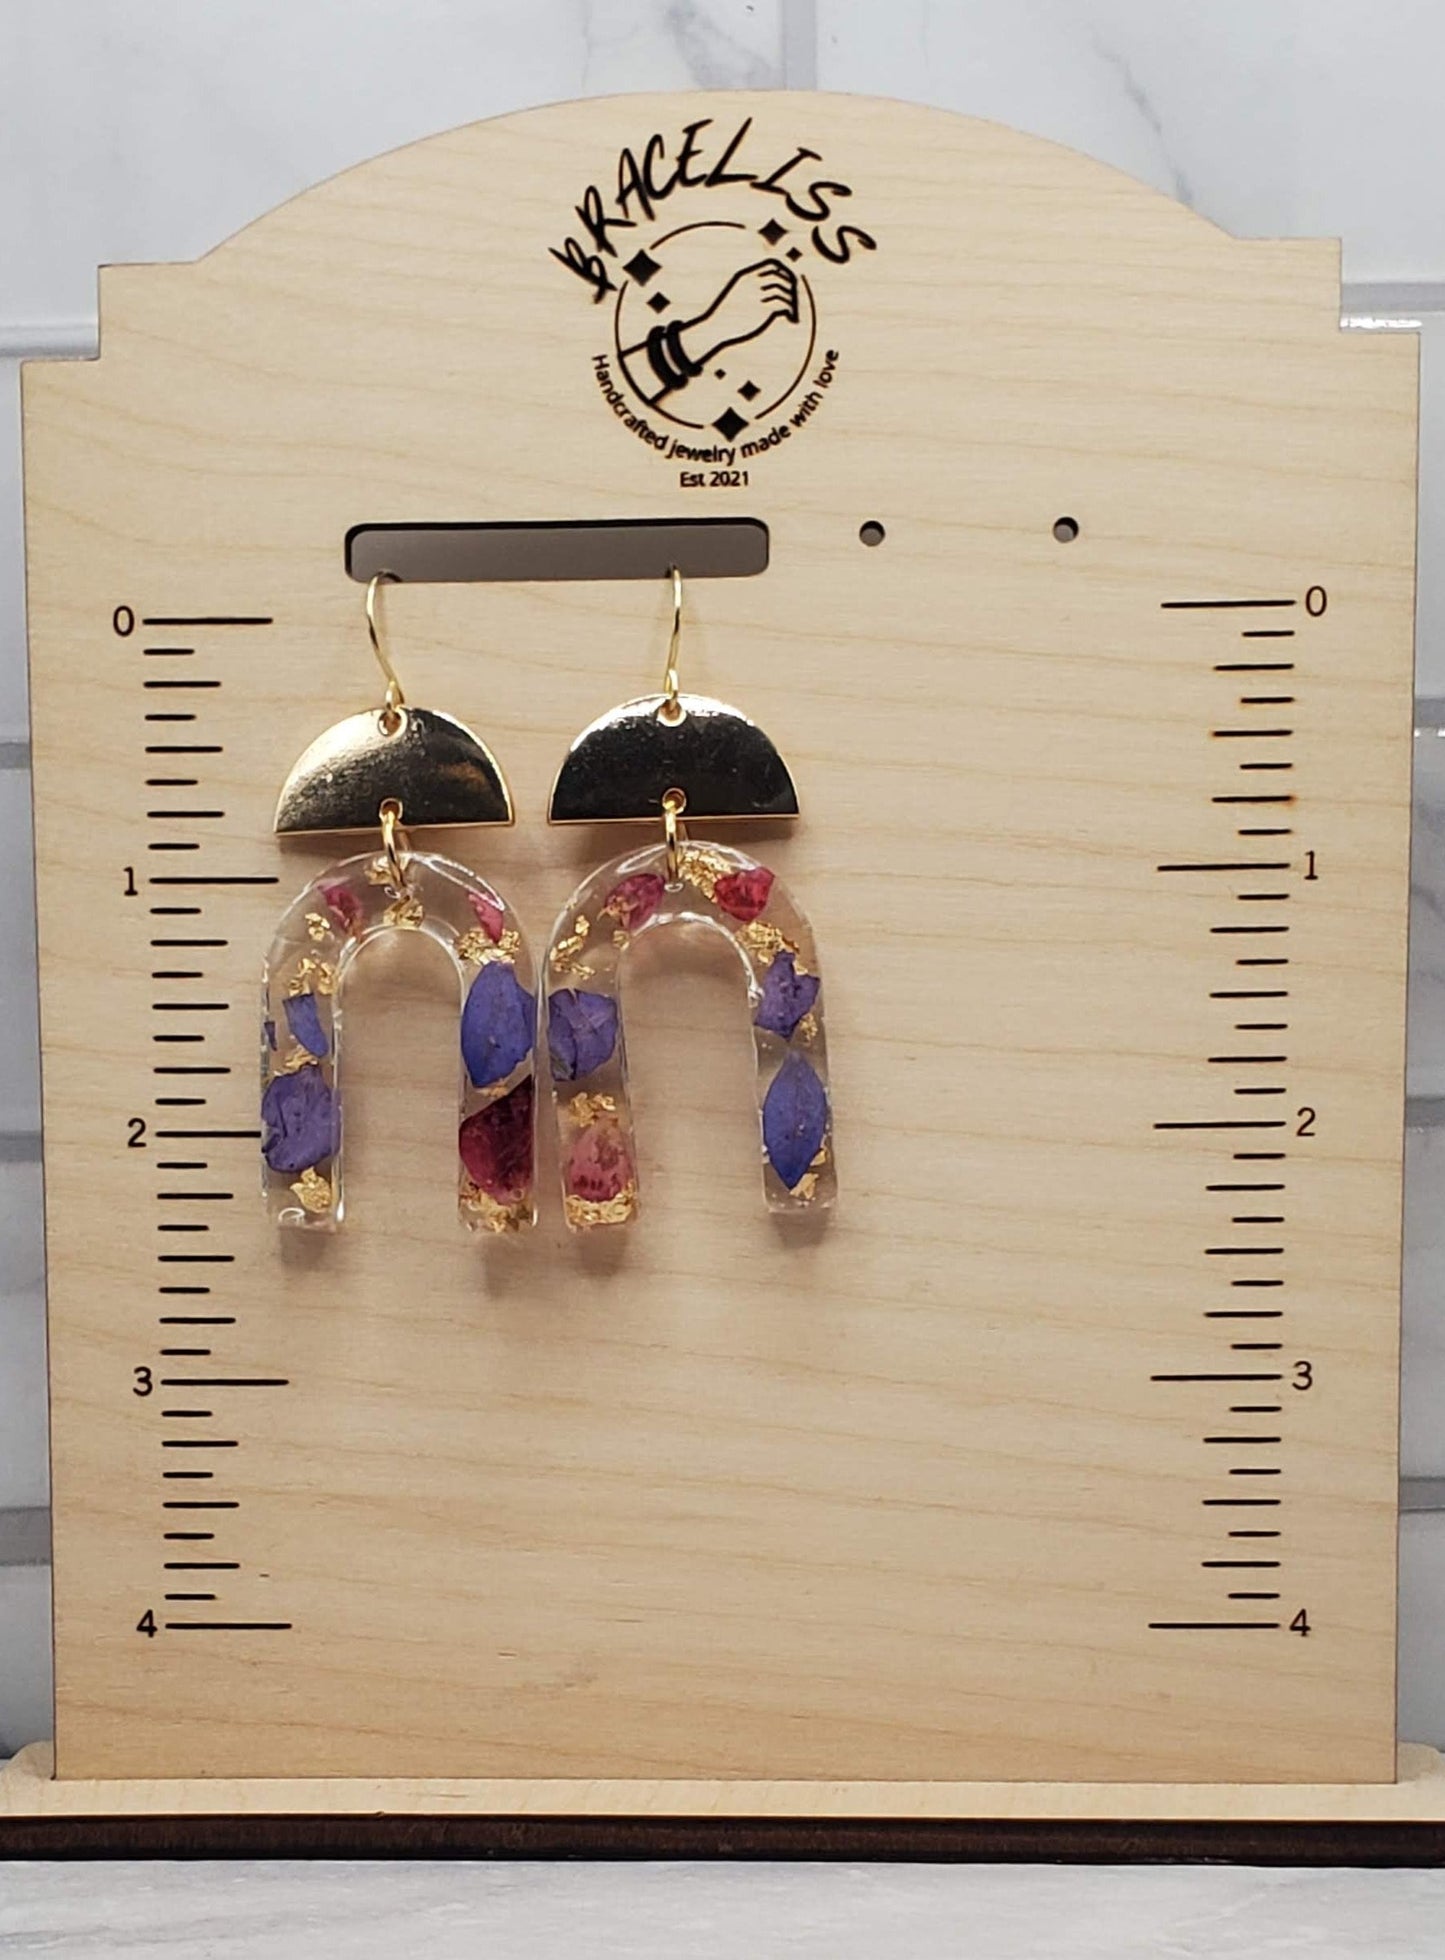 Purple floral arch earrings | pressed flower resin earrings on measuring display | Braceliss